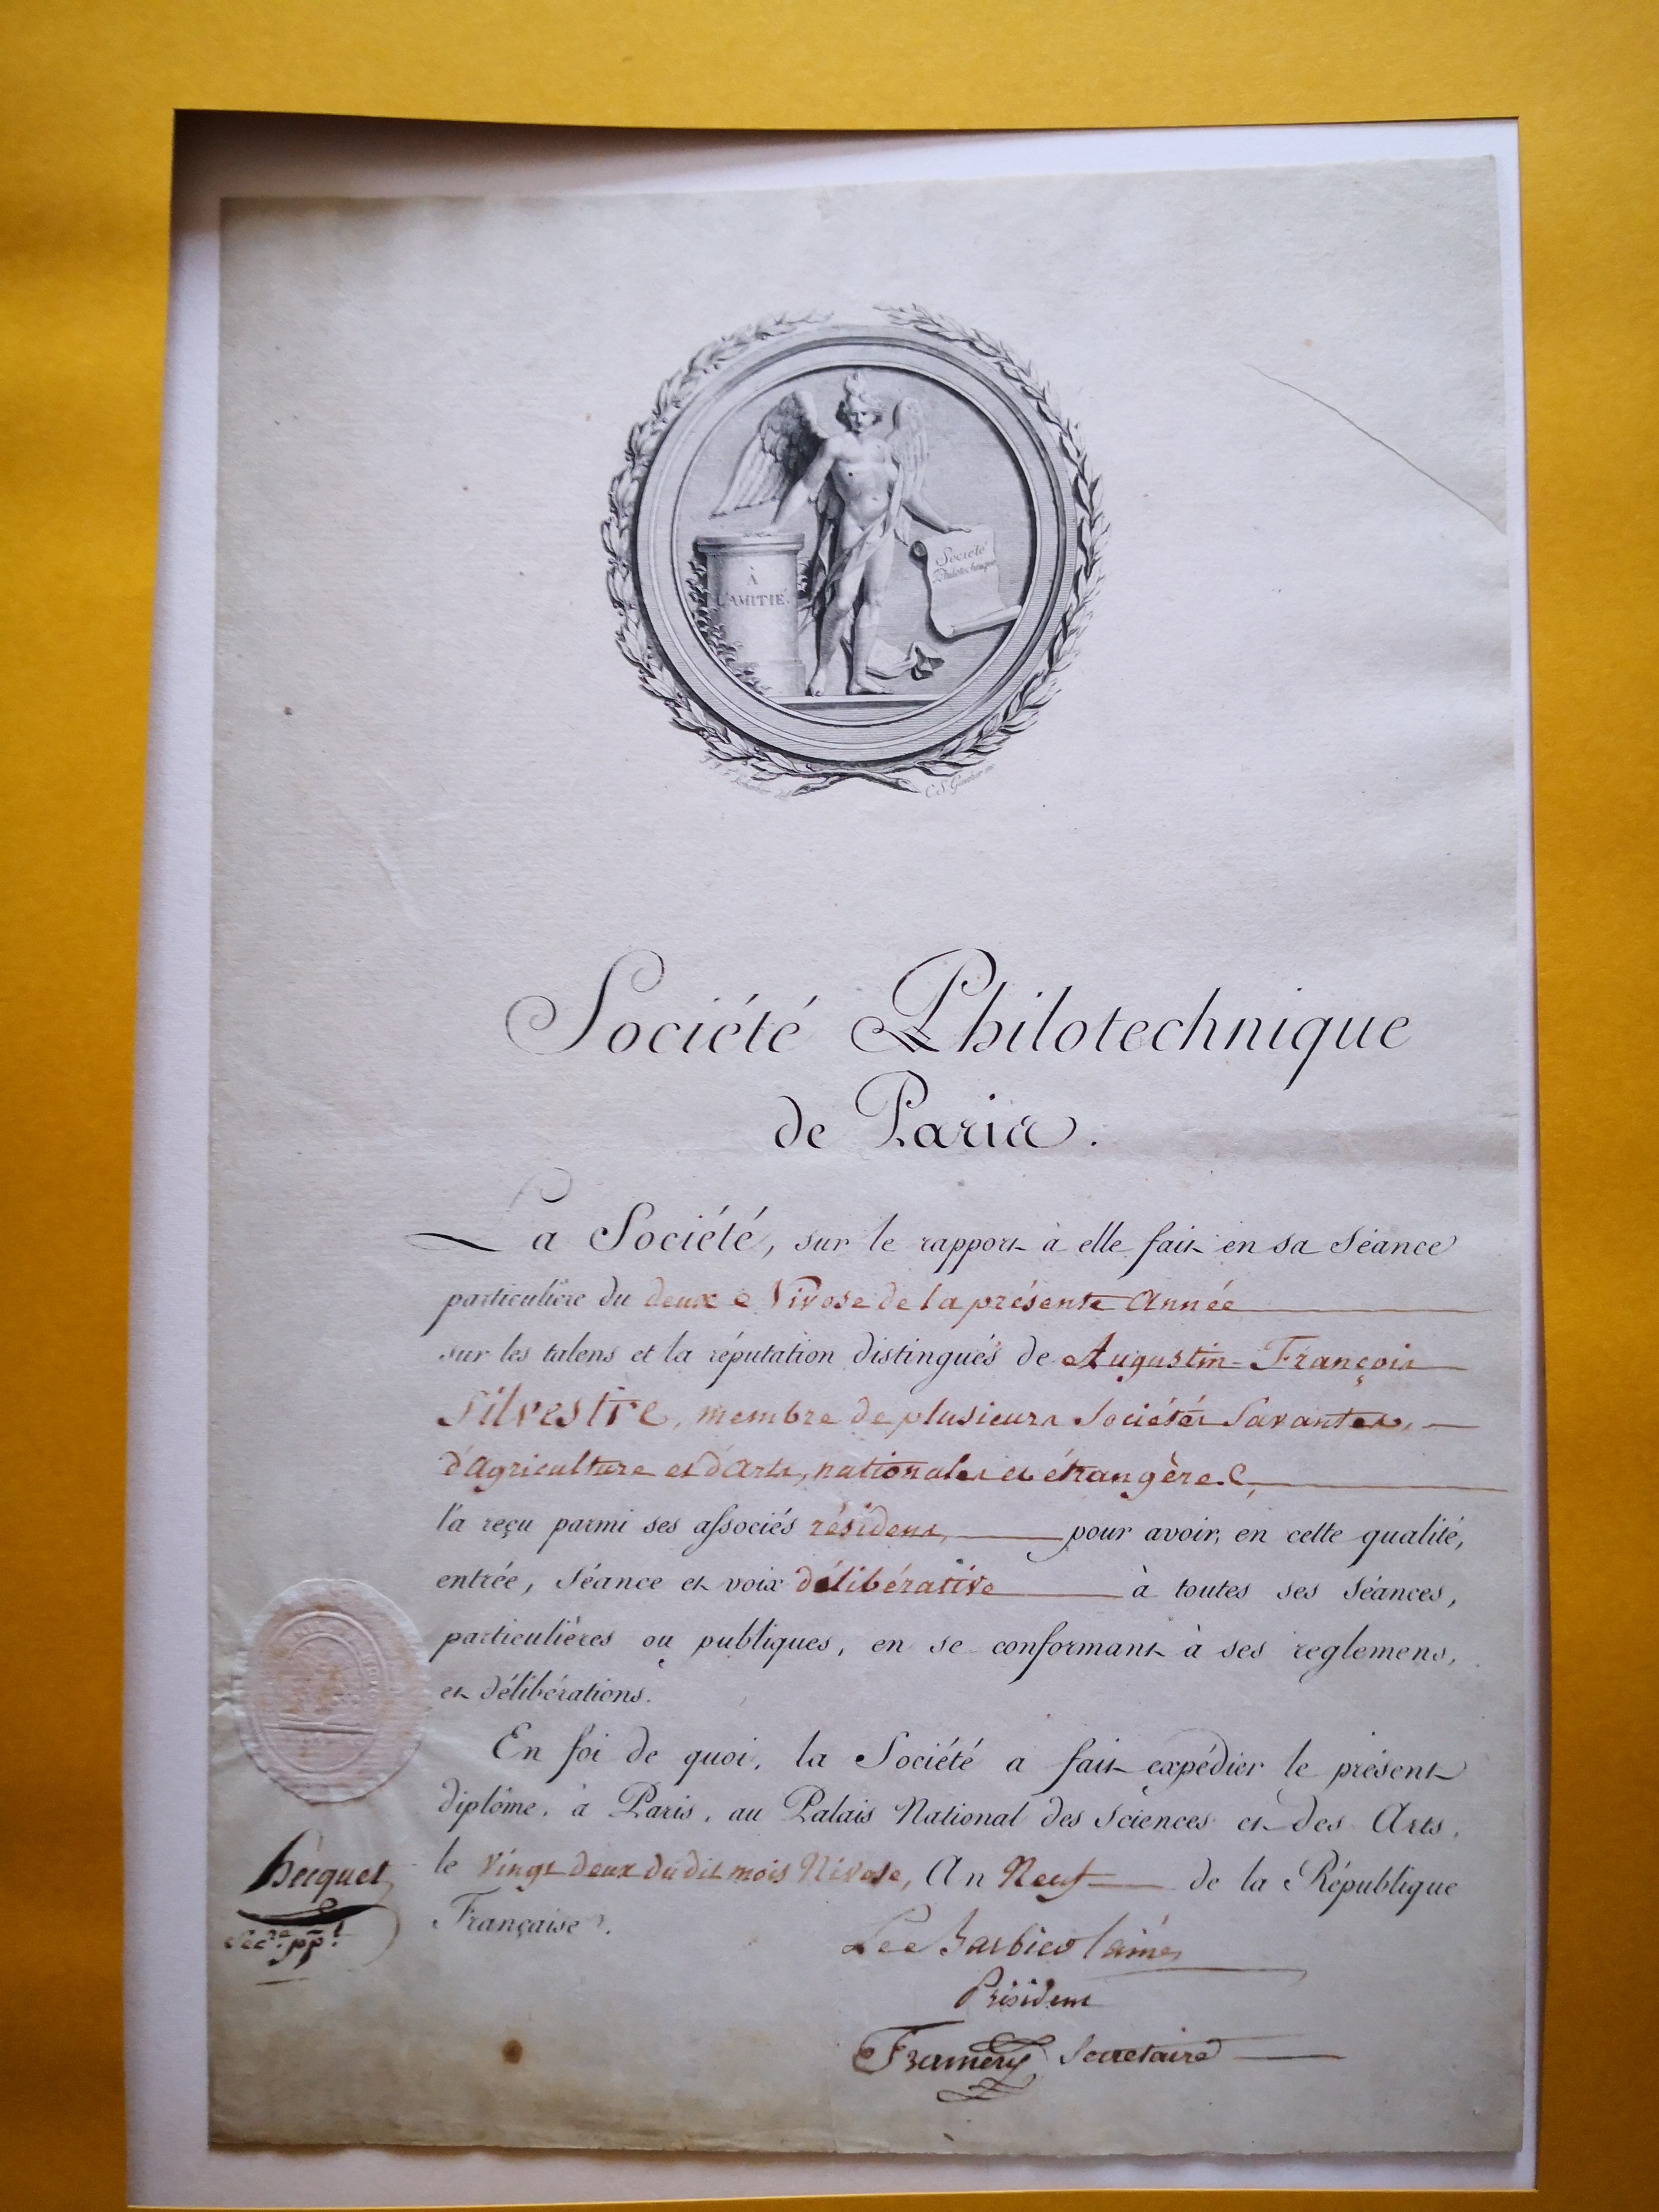  Réception de Augustin-François de Silvestre à la Société Philotechnique de Paris - Document 1